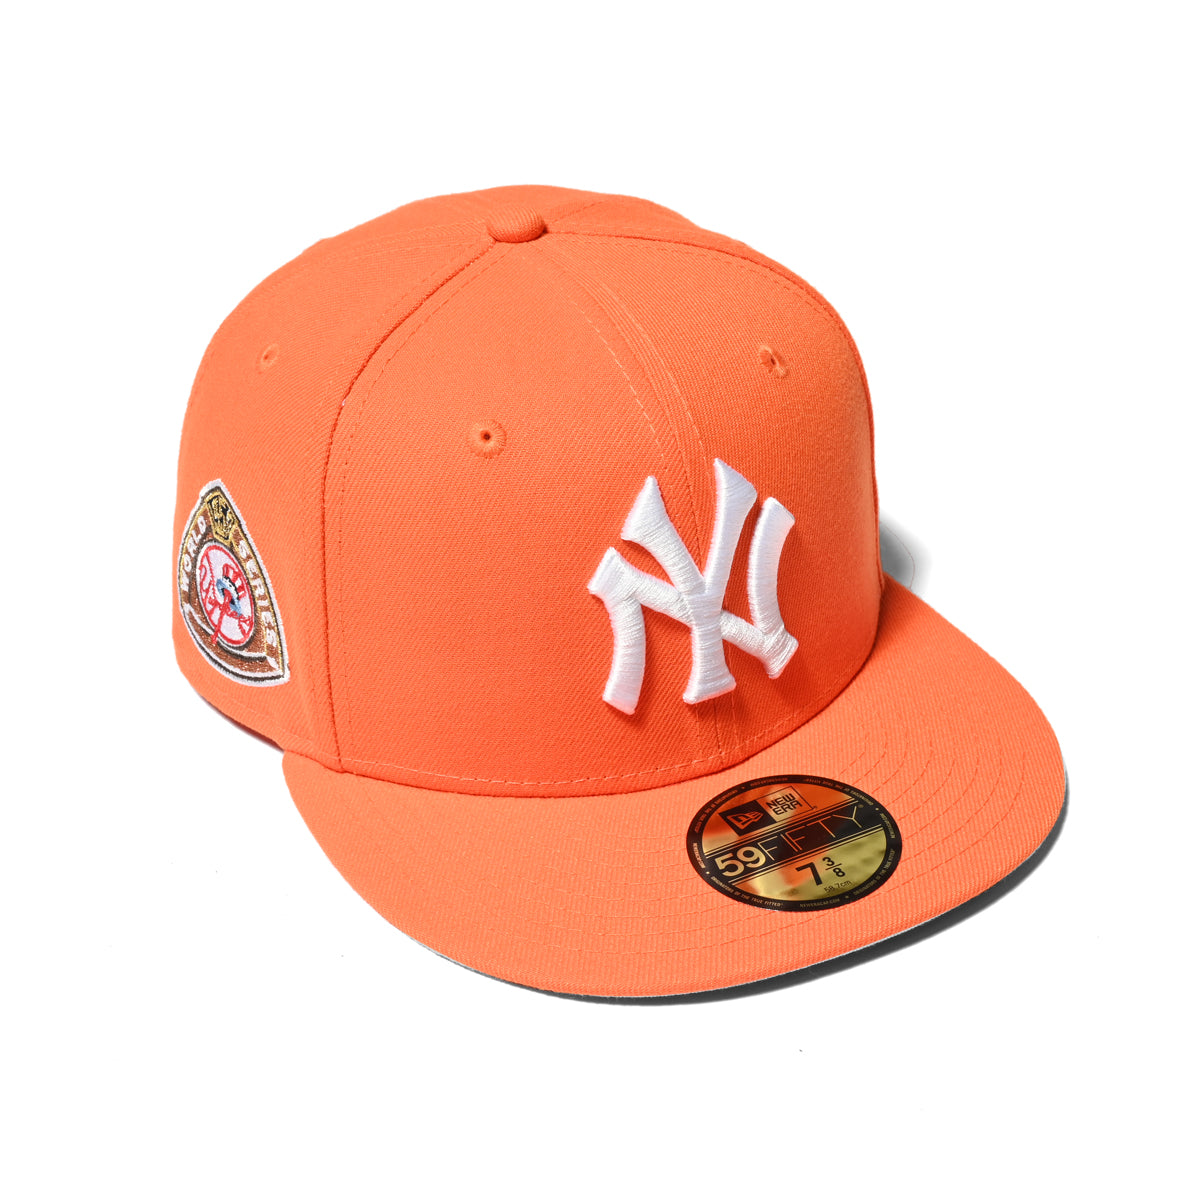 NEW ERA New York Yankees - WS 1950 59FIFTY RUSH ORAGE [70782904]